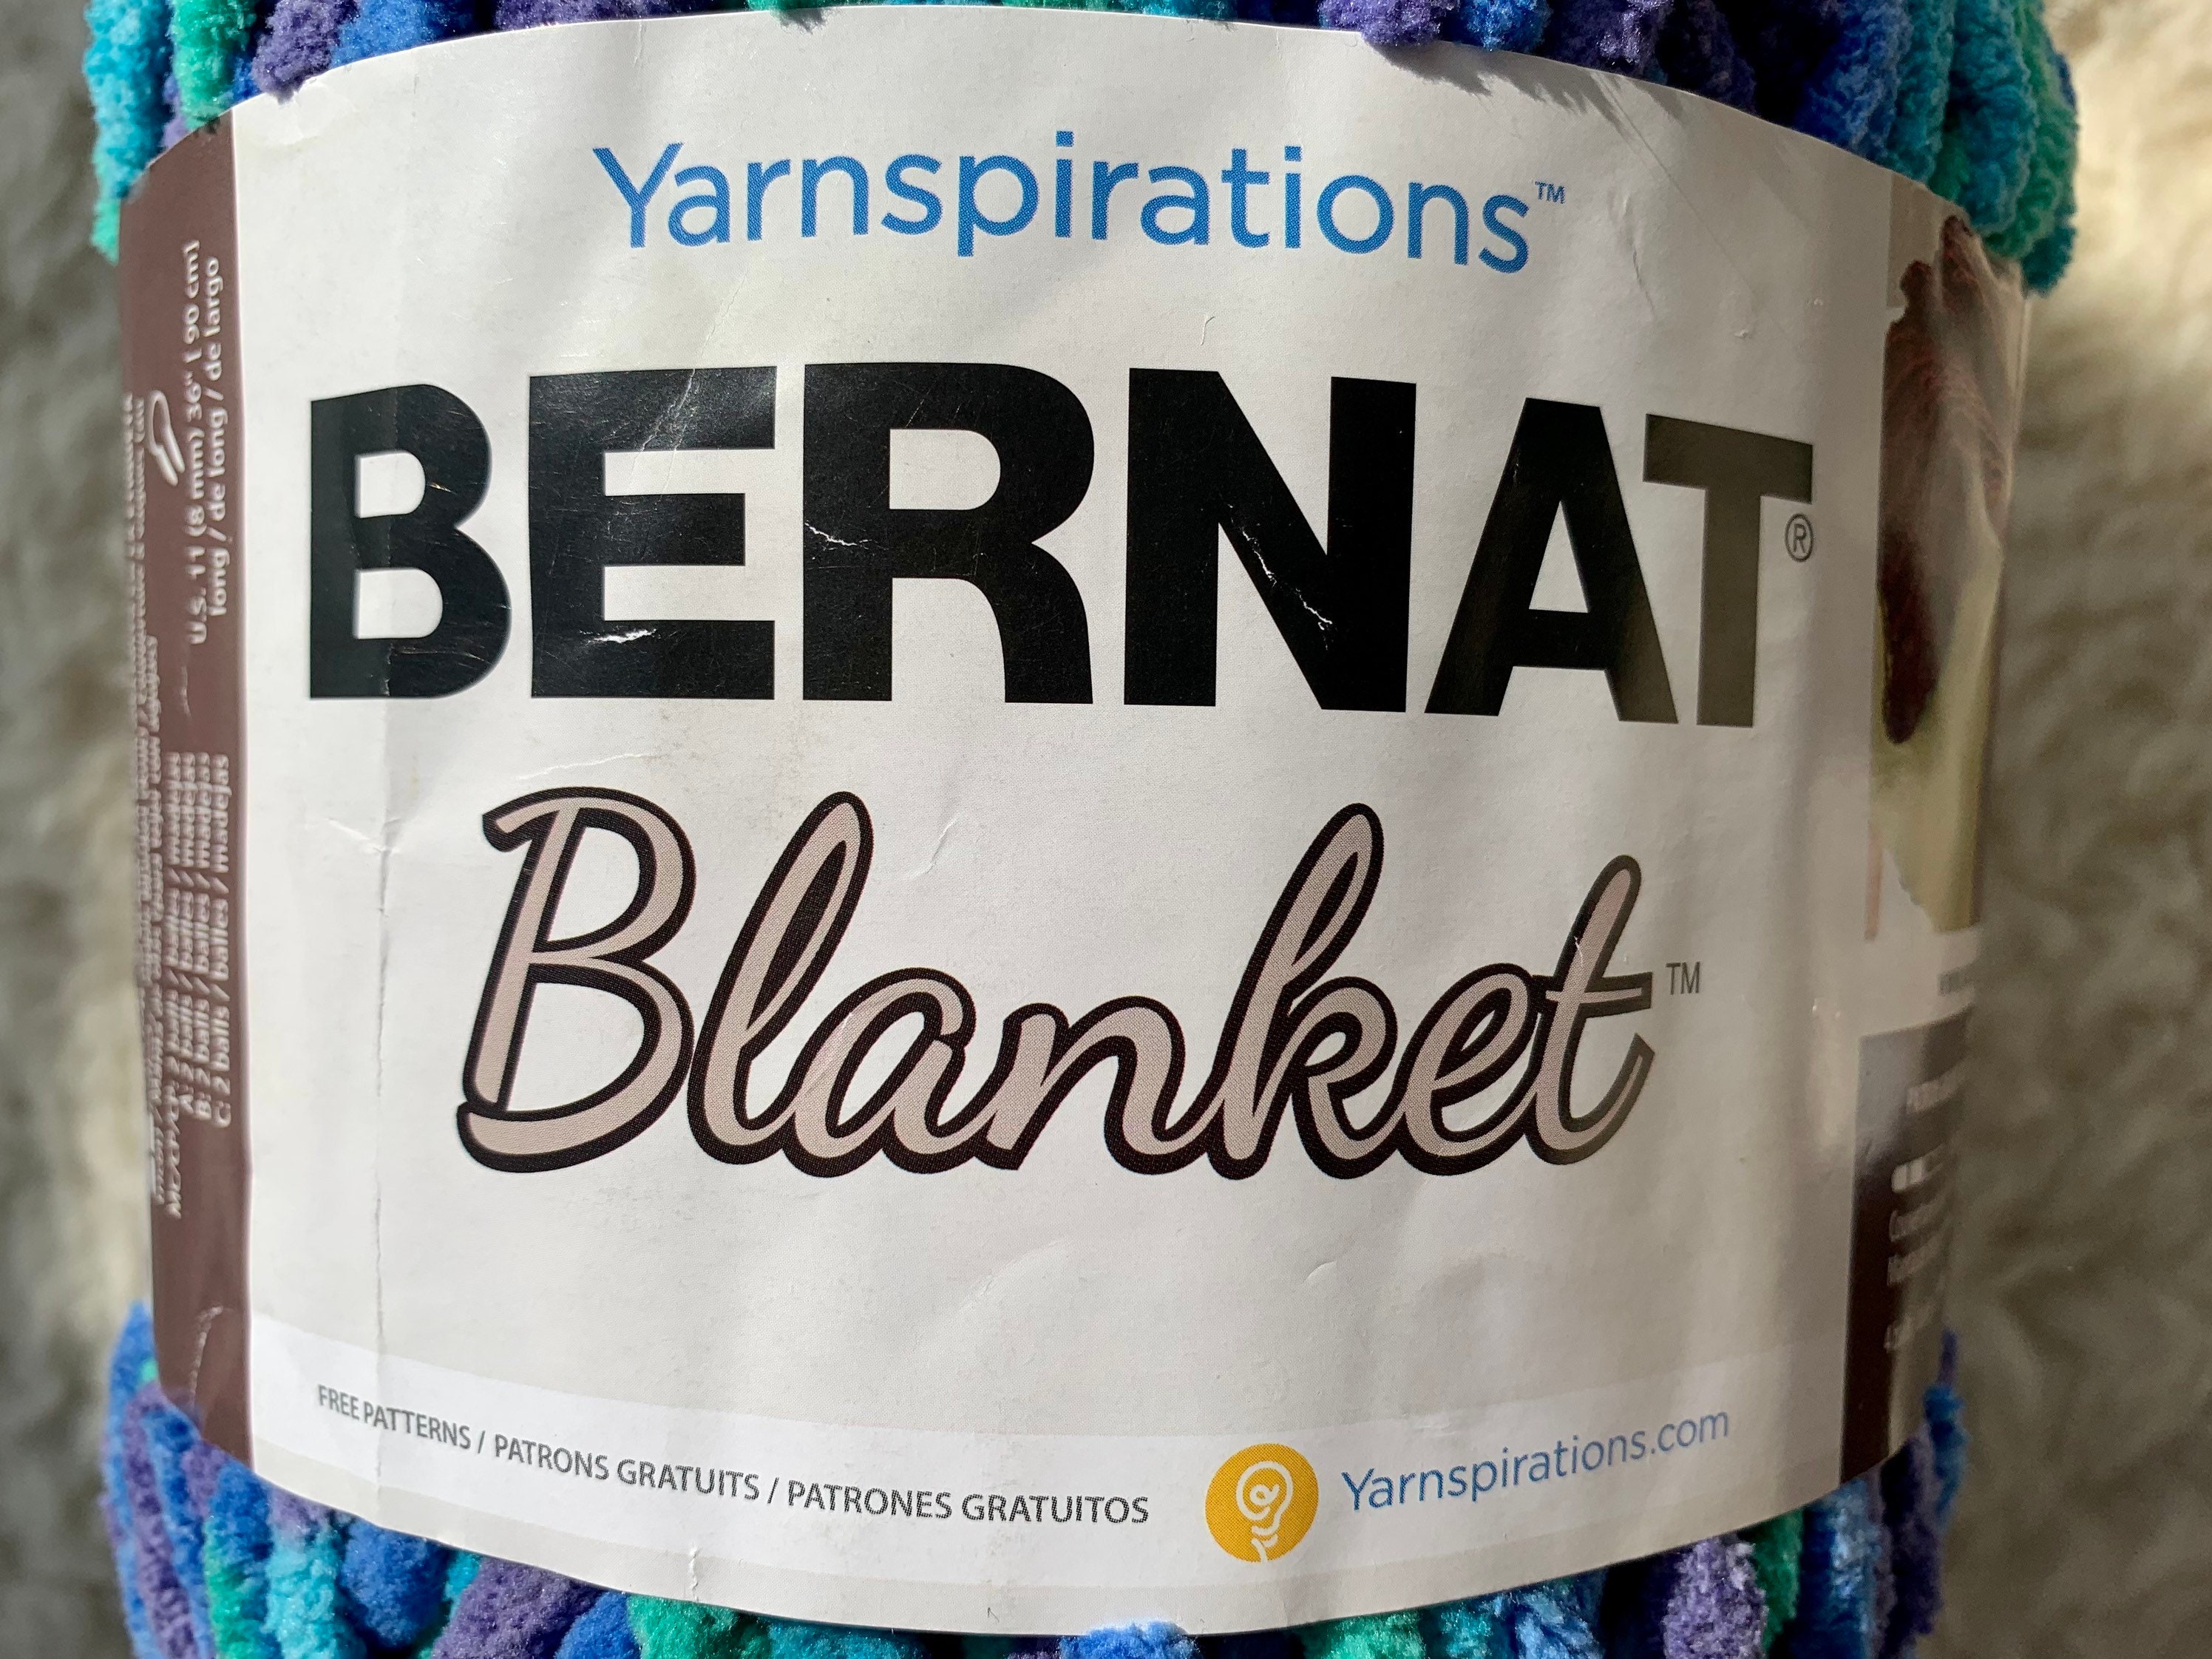 Bernat Blanket Yarn COAL 10.5oz/300g/220yd 